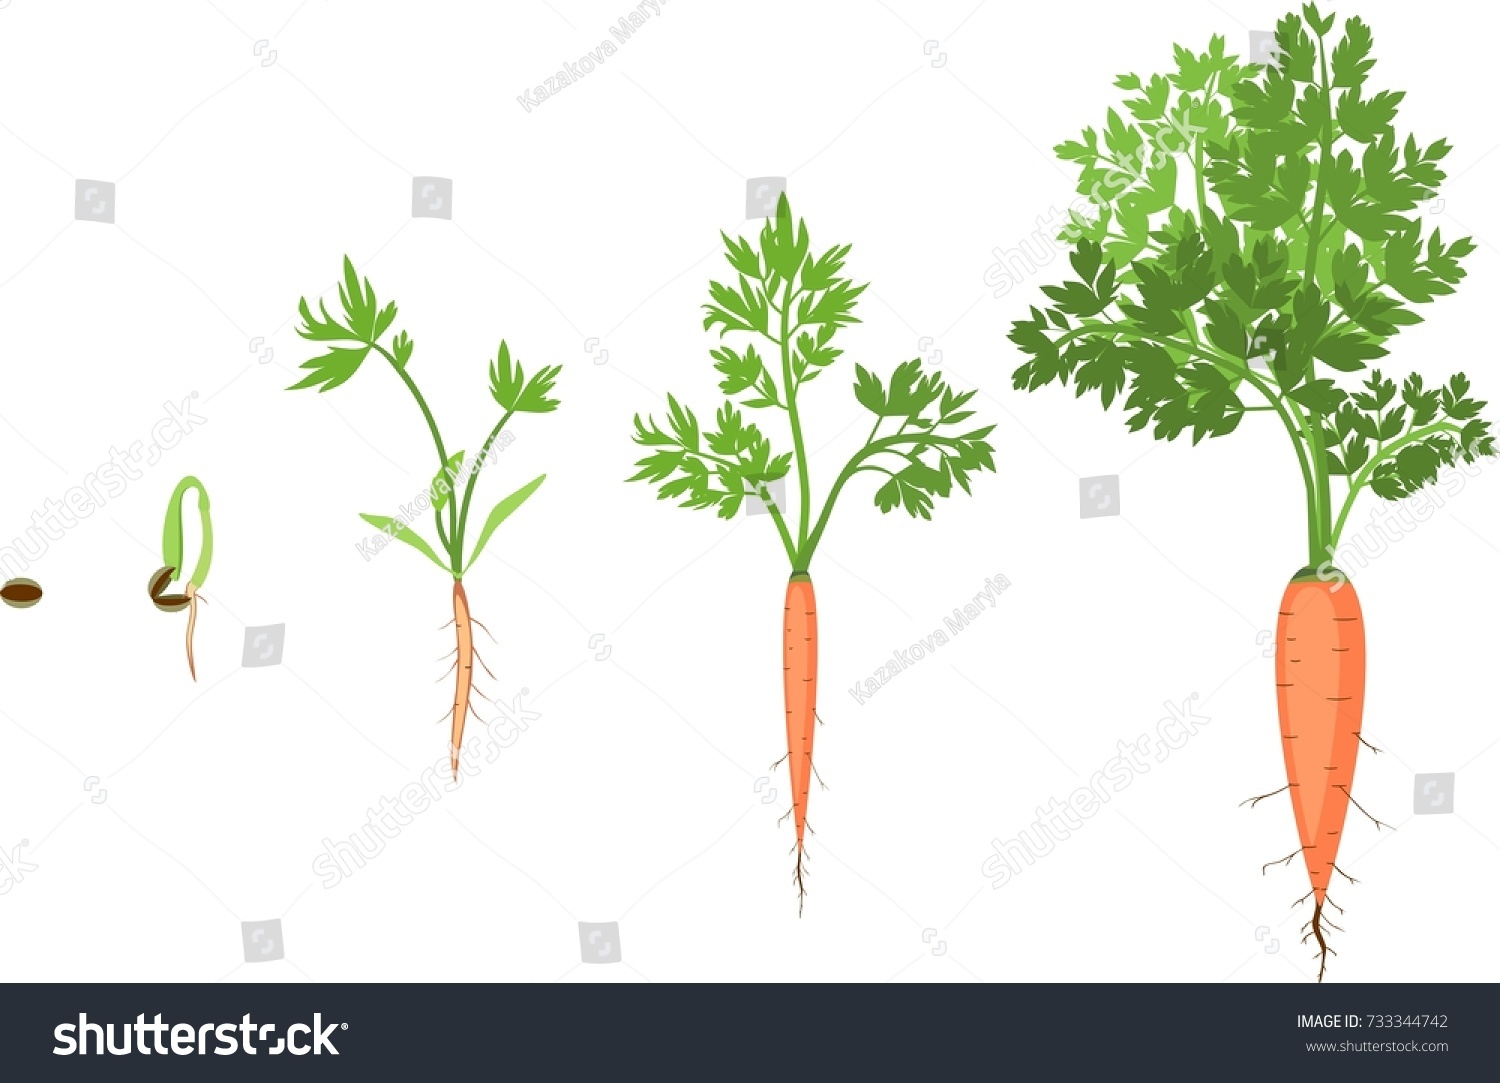 Этапы роста моркови